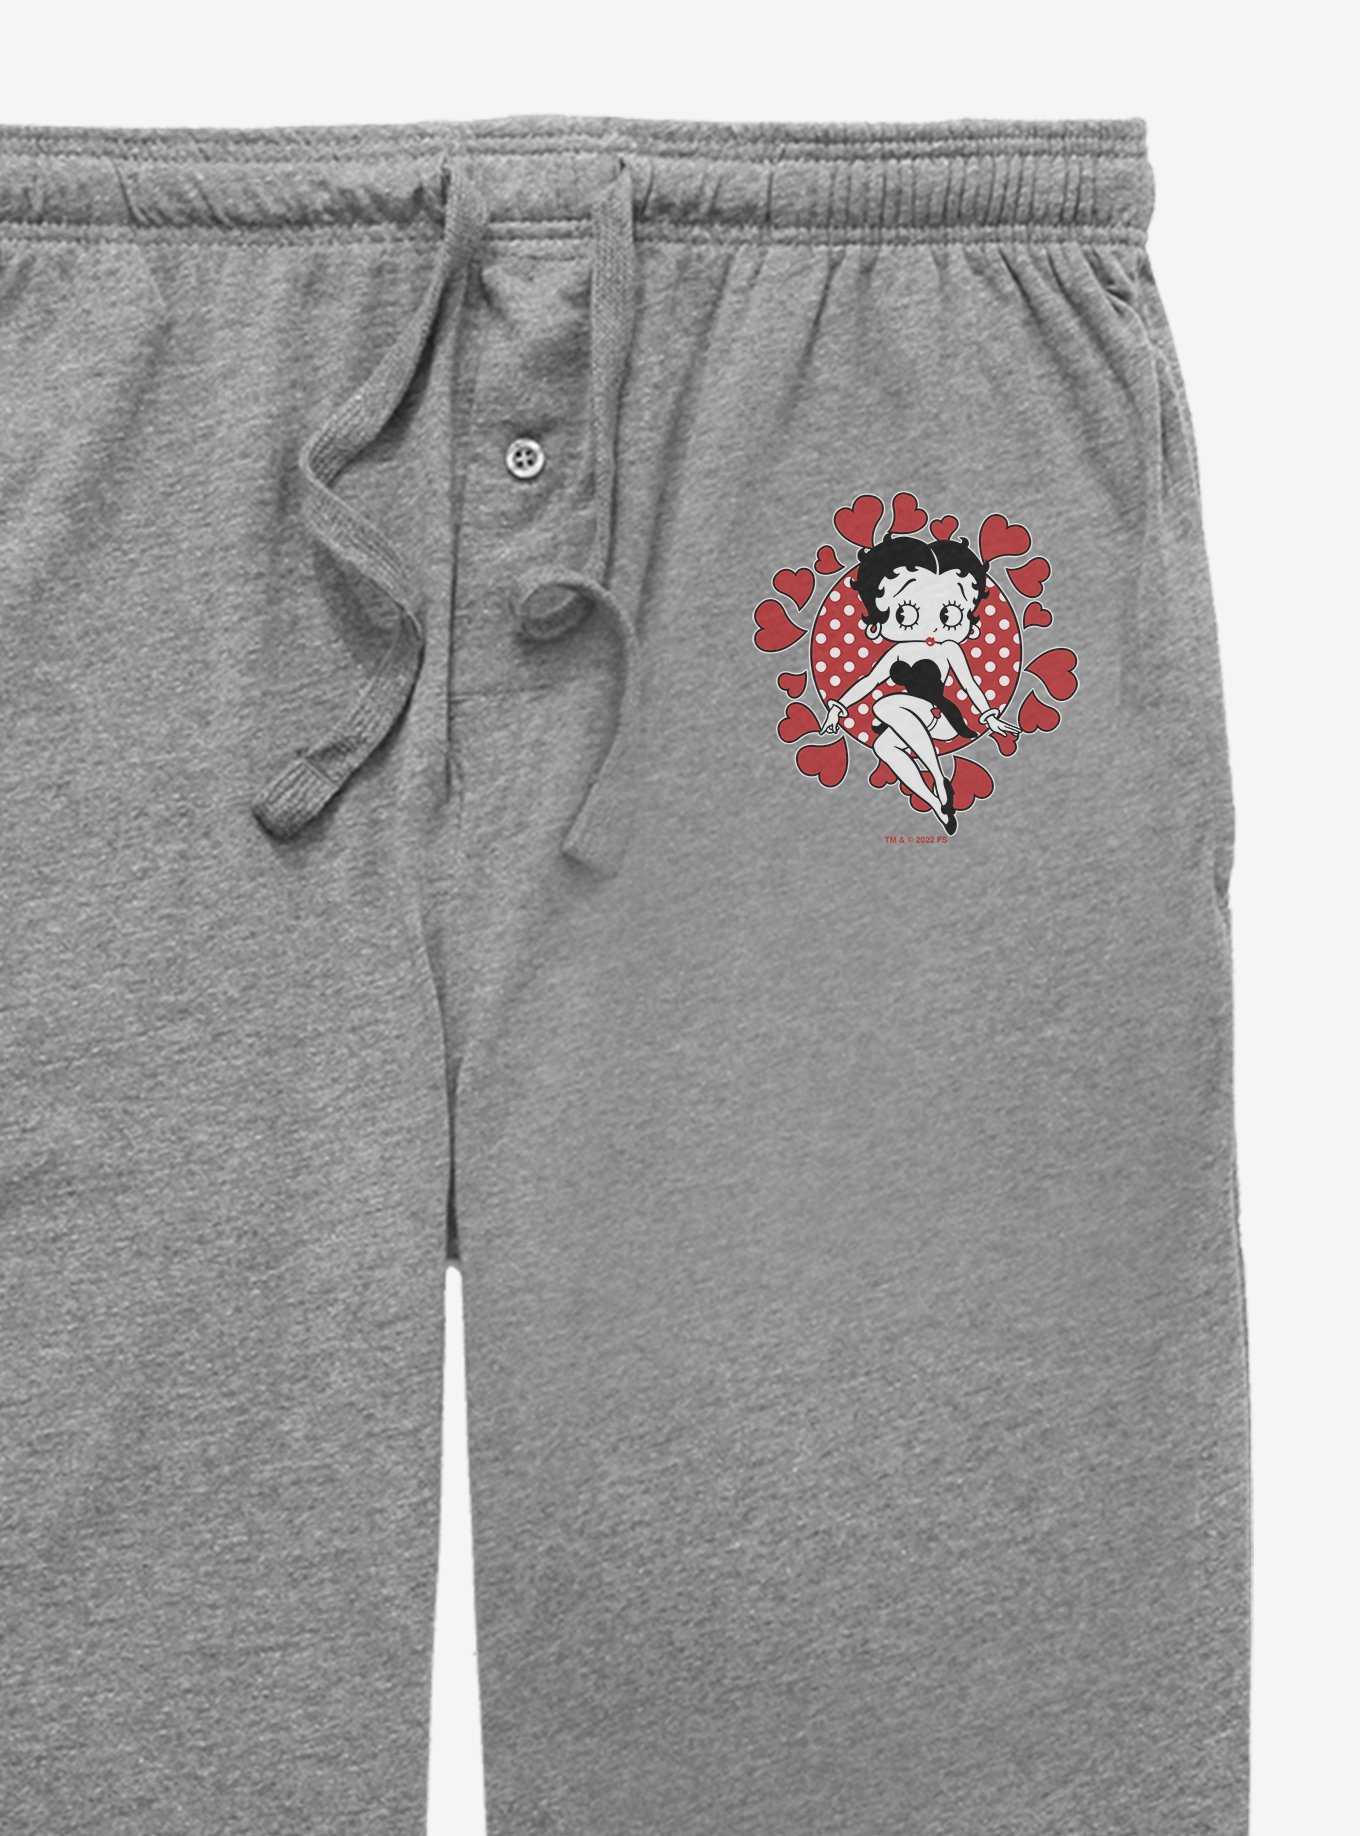 Betty Boop Hearts Galore Pajama Pants, , hi-res